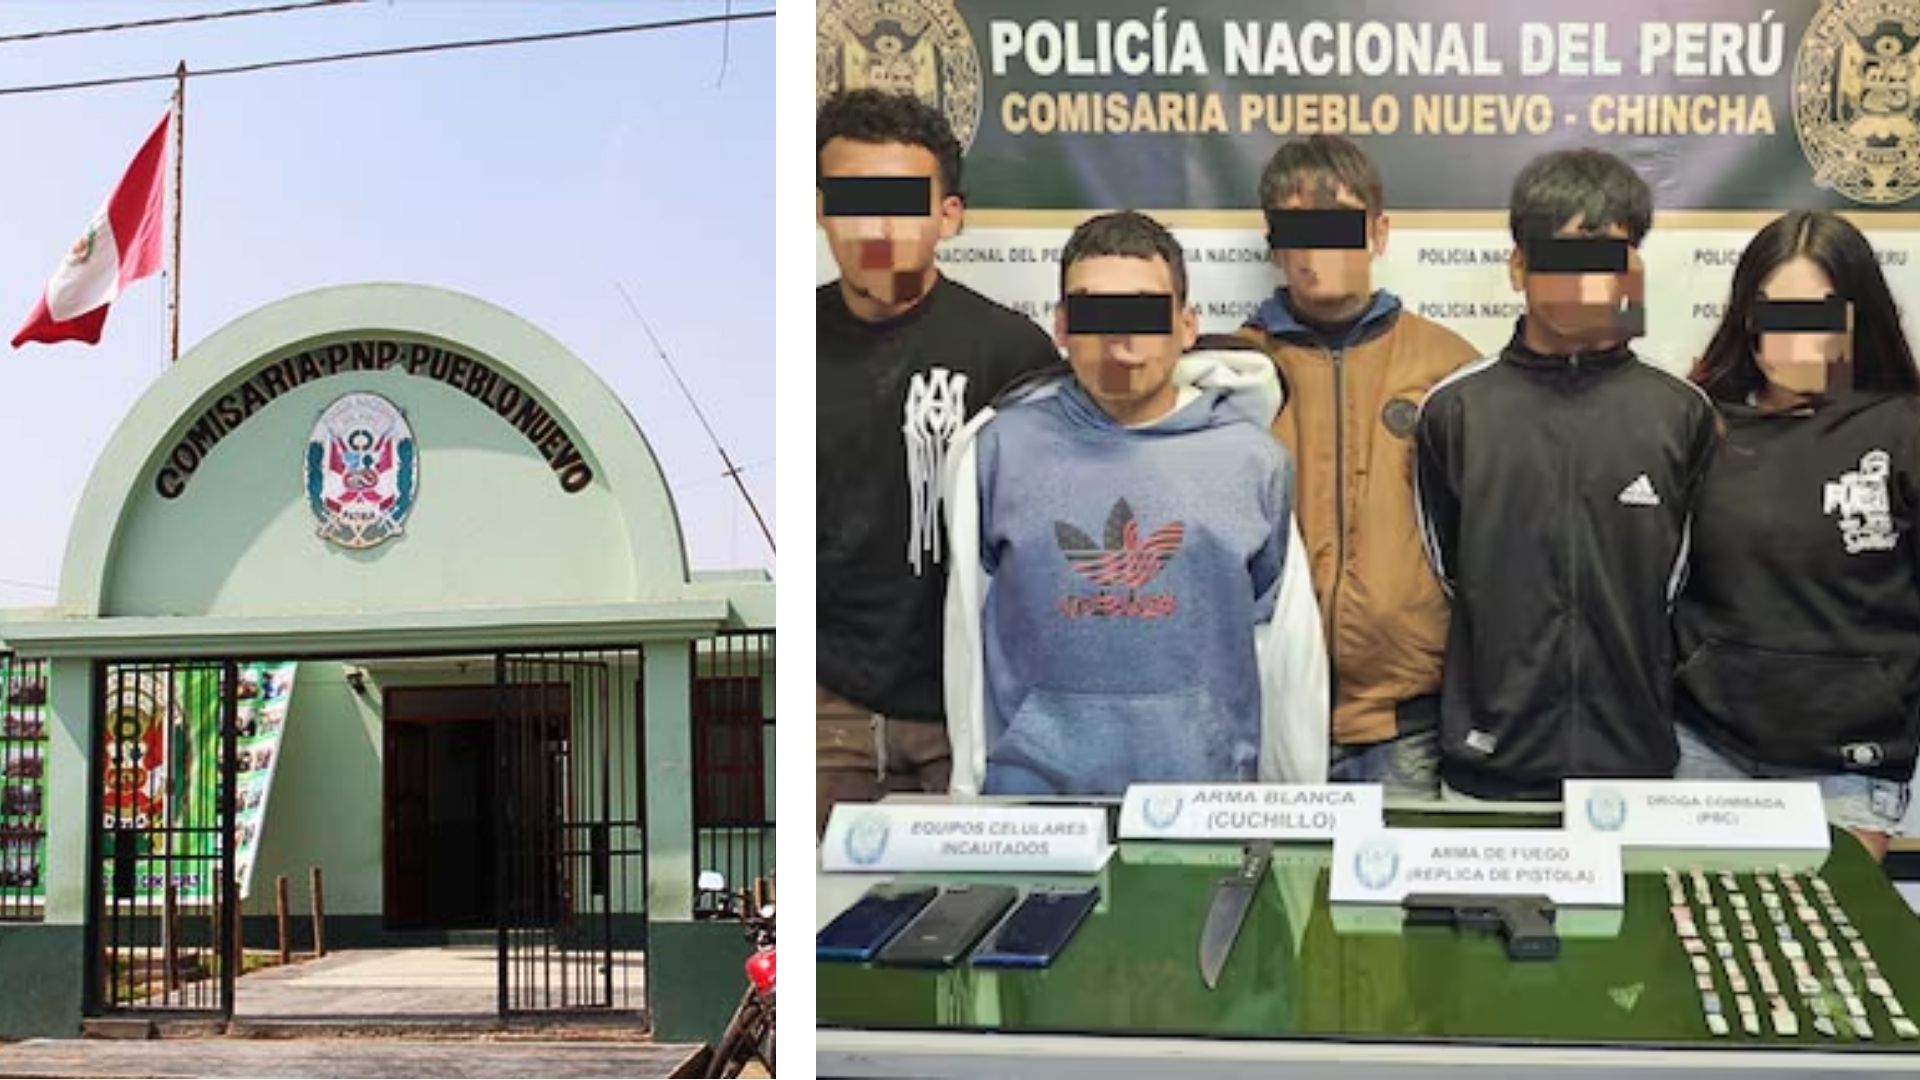 Chincha: Detienen a banda criminal “Los tower de Melchorita”